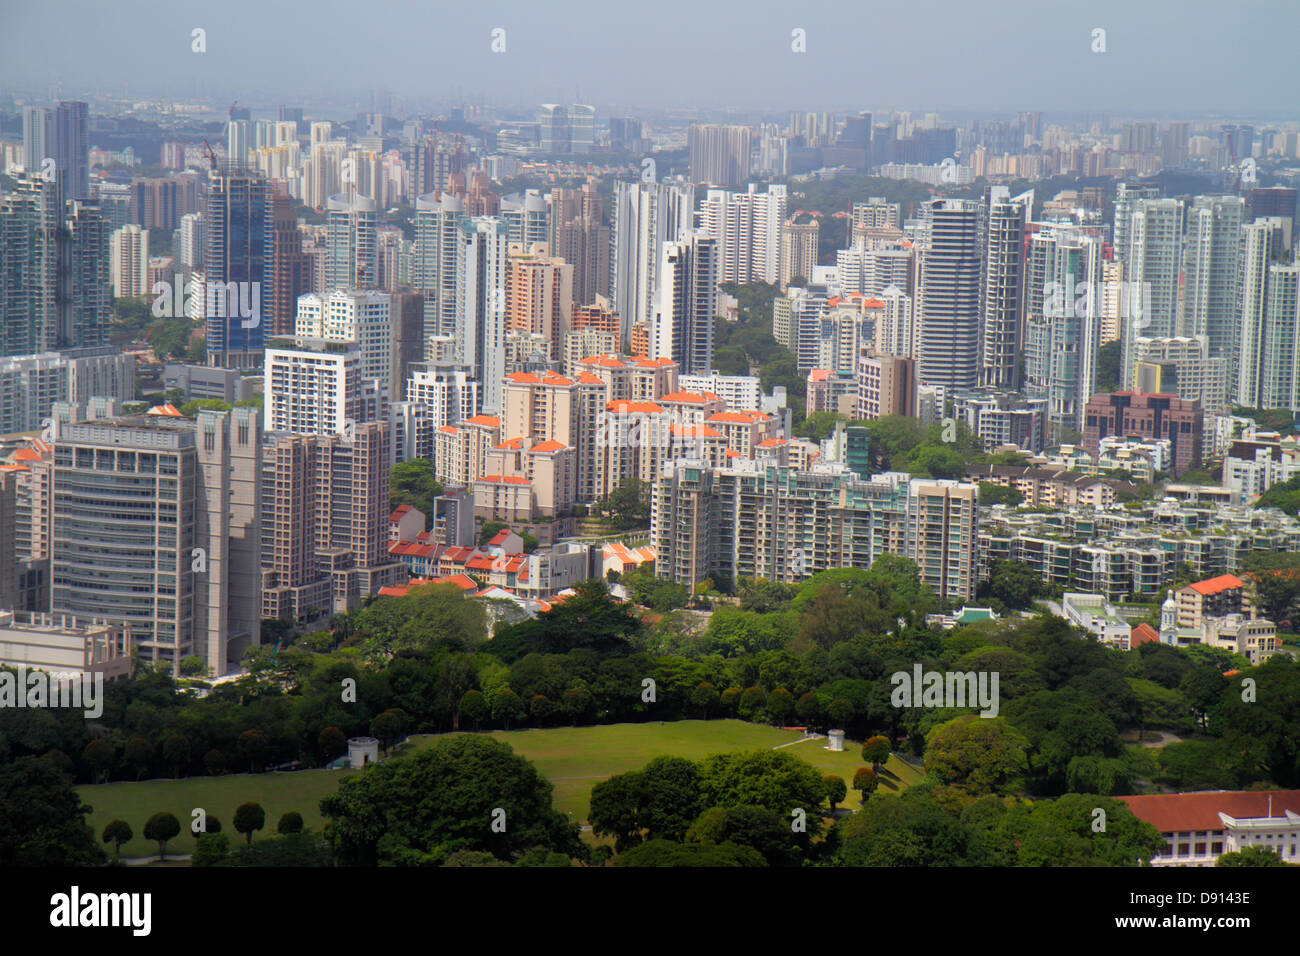 Skyline von Singapur, Wolkenkratzer, Luftaufnahme von oben, Hochhaus, Eigentumswohnung Wohnapartments Gebäude Gebäude Gehäuse, r Stockfoto